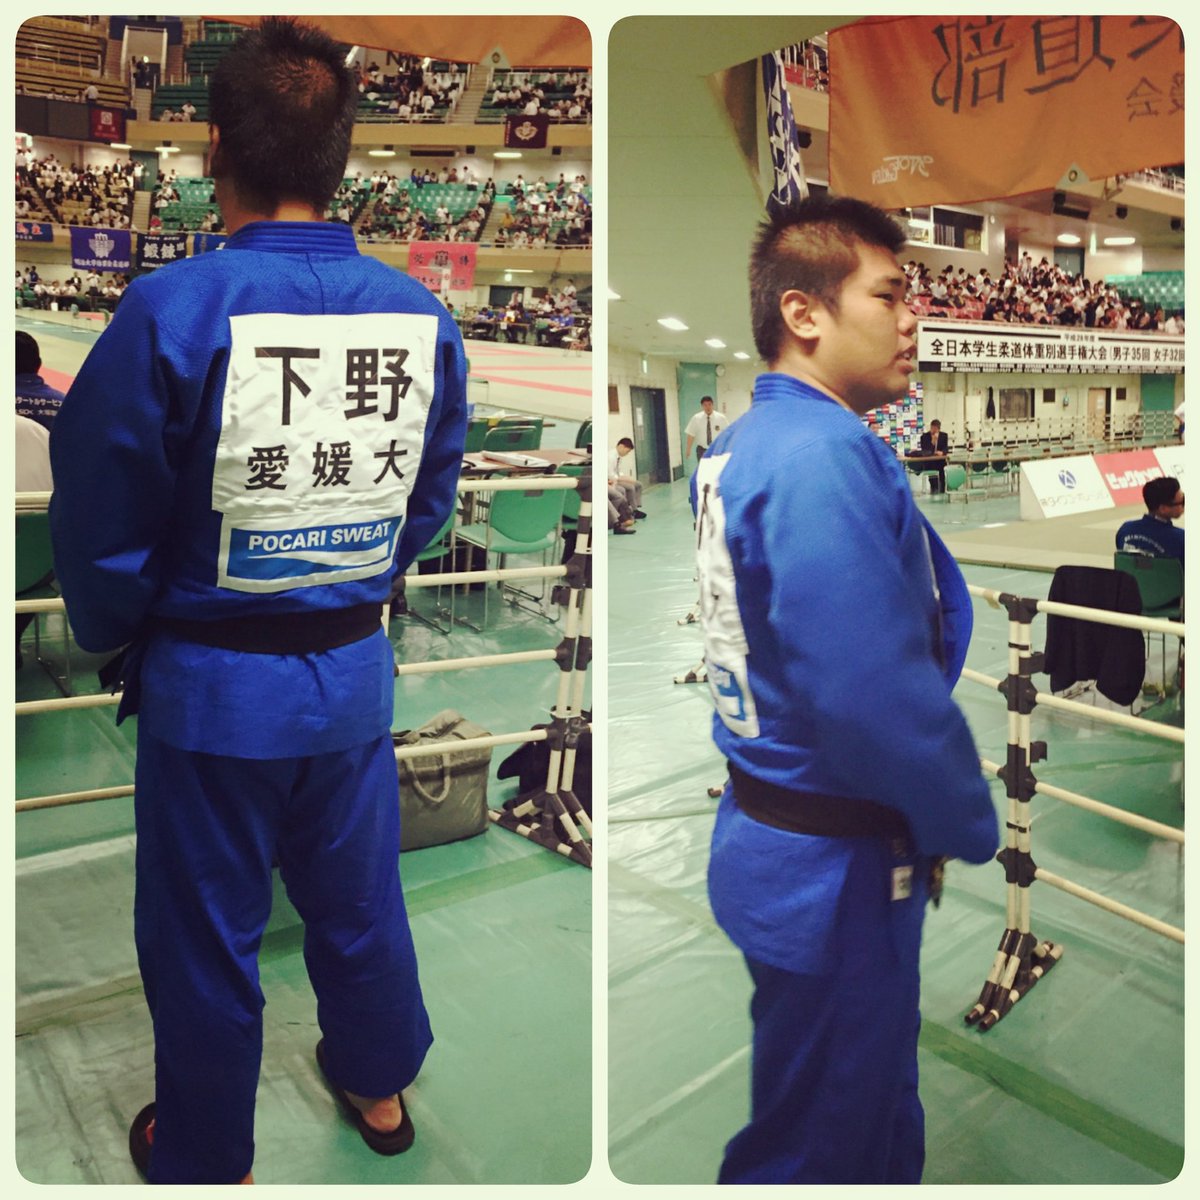 愛媛大学柔道部 Na Twitteru 全日本学生柔道体重別選手権大会に 下野が出てます 青道着かっこいい ファイトでーーーす